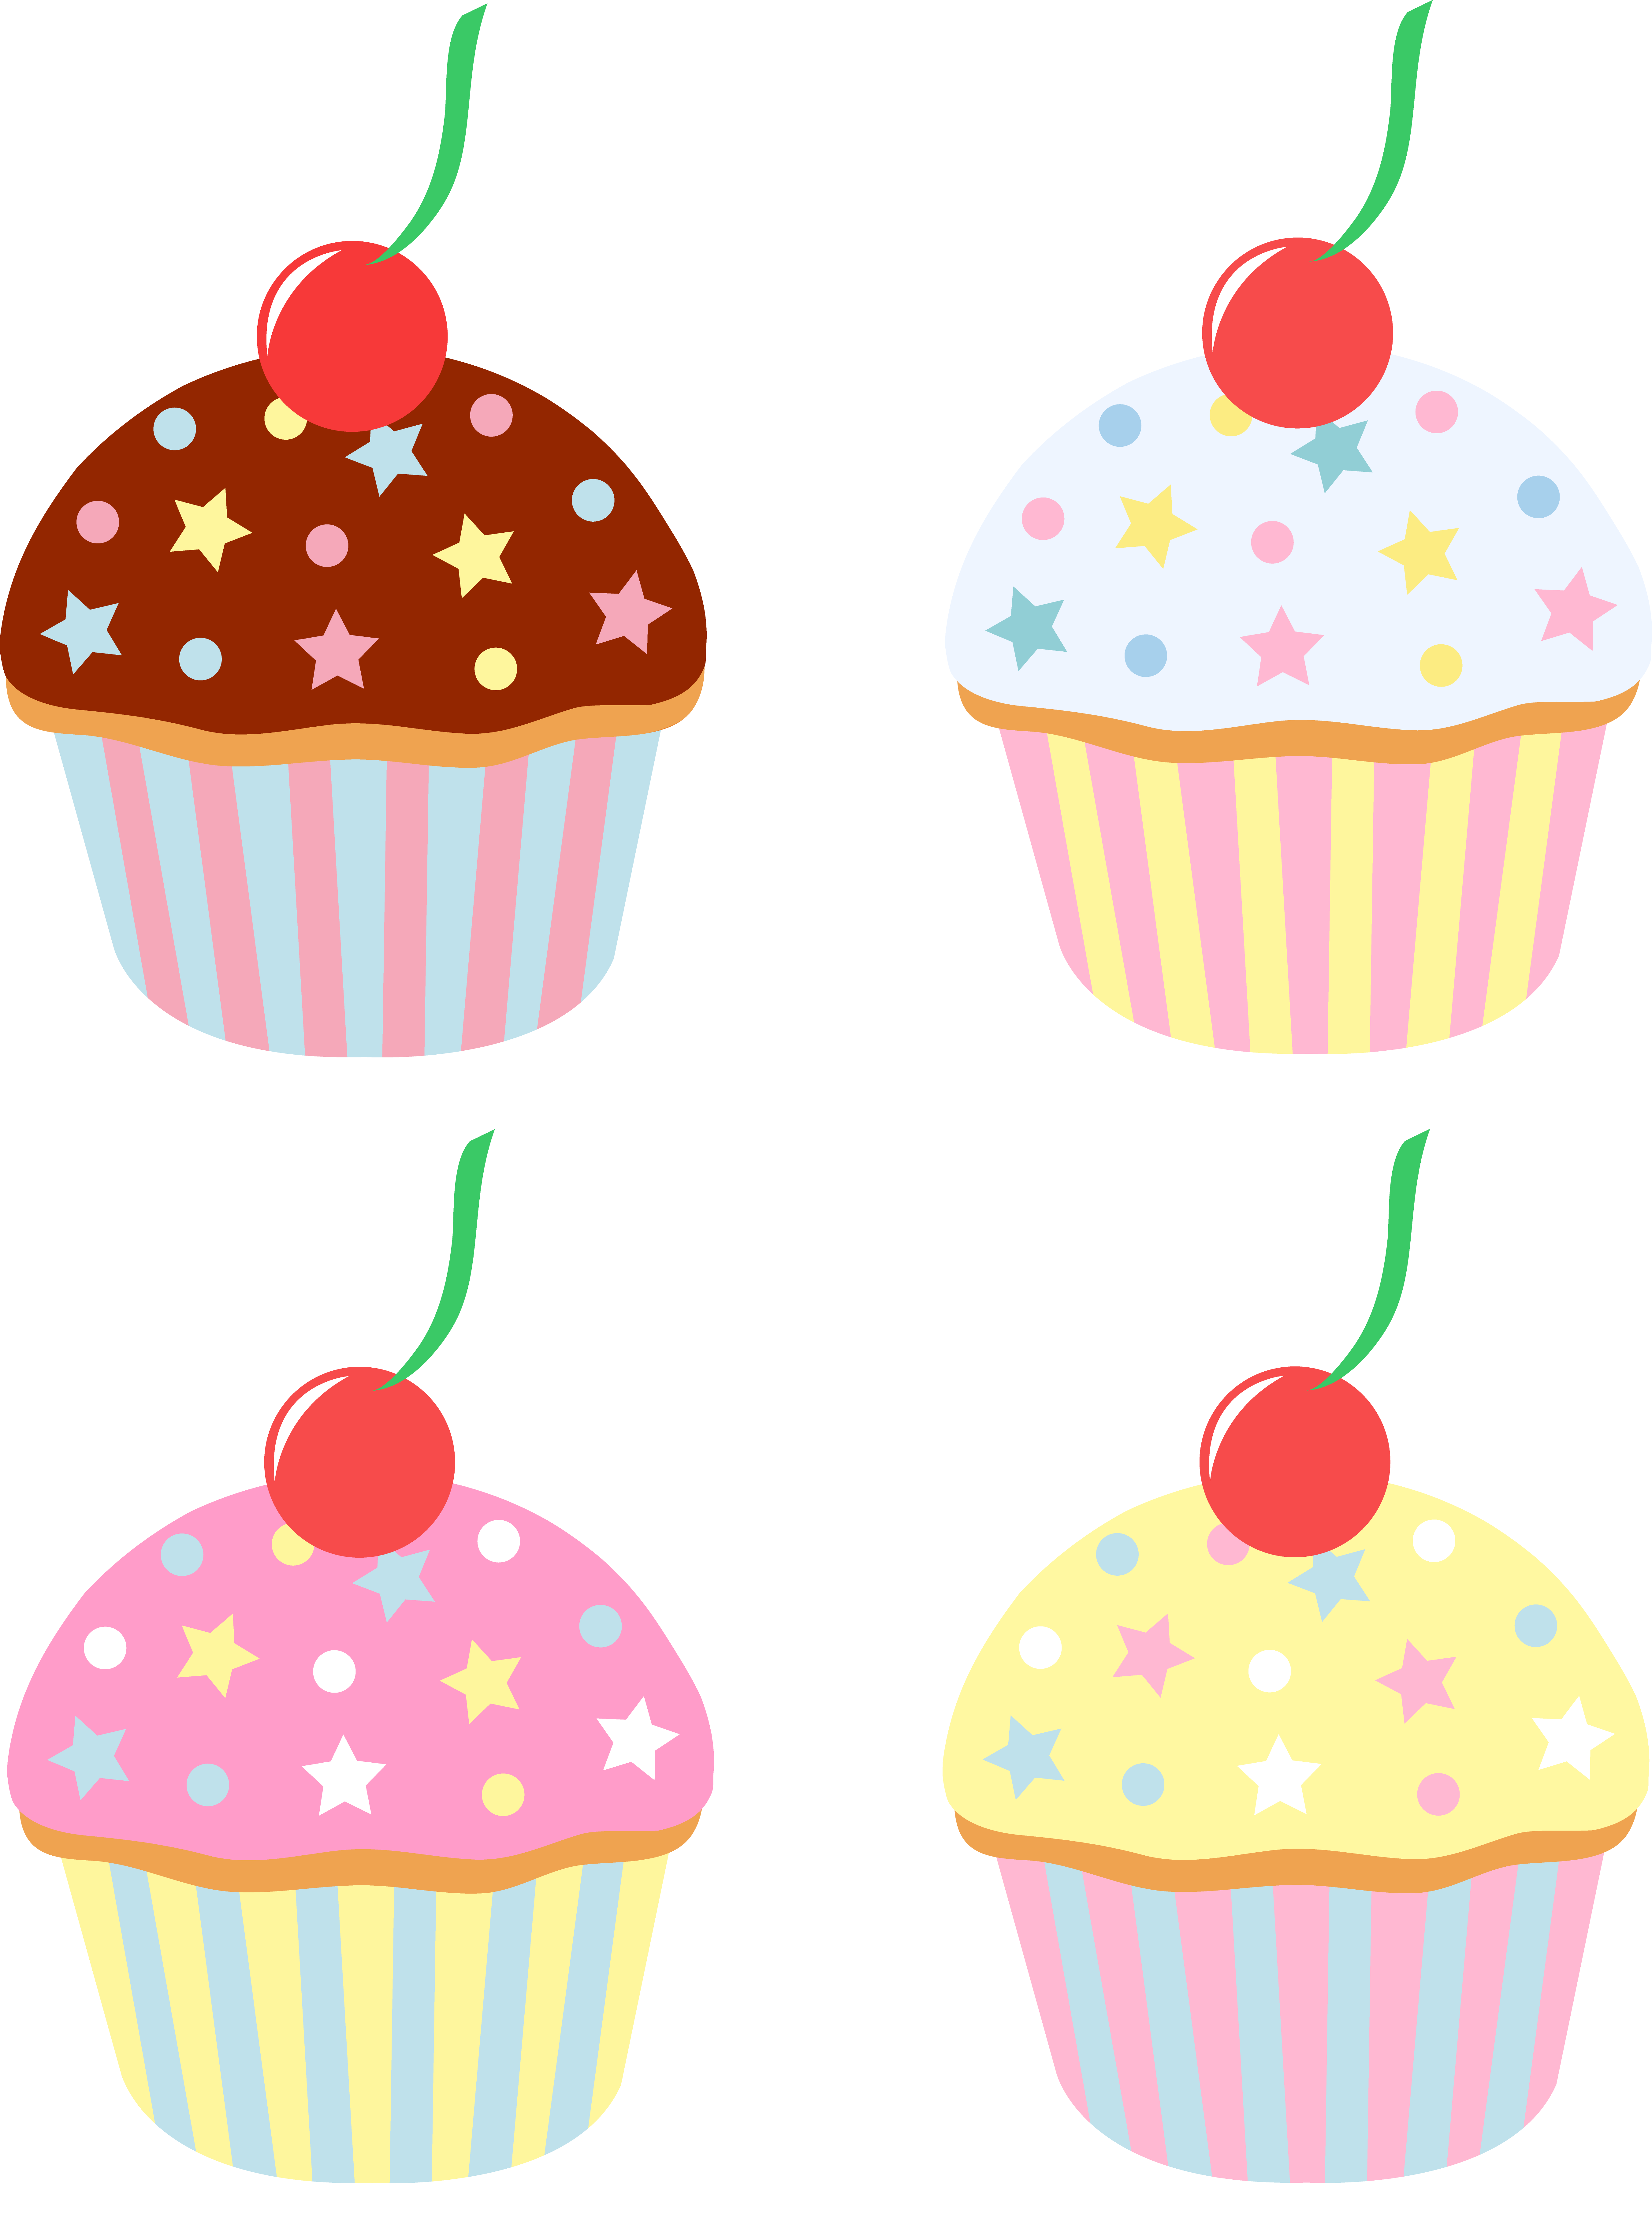 Cartoon Pics Of Cupcakes | Free Download Clip Art | Free Clip Art ...